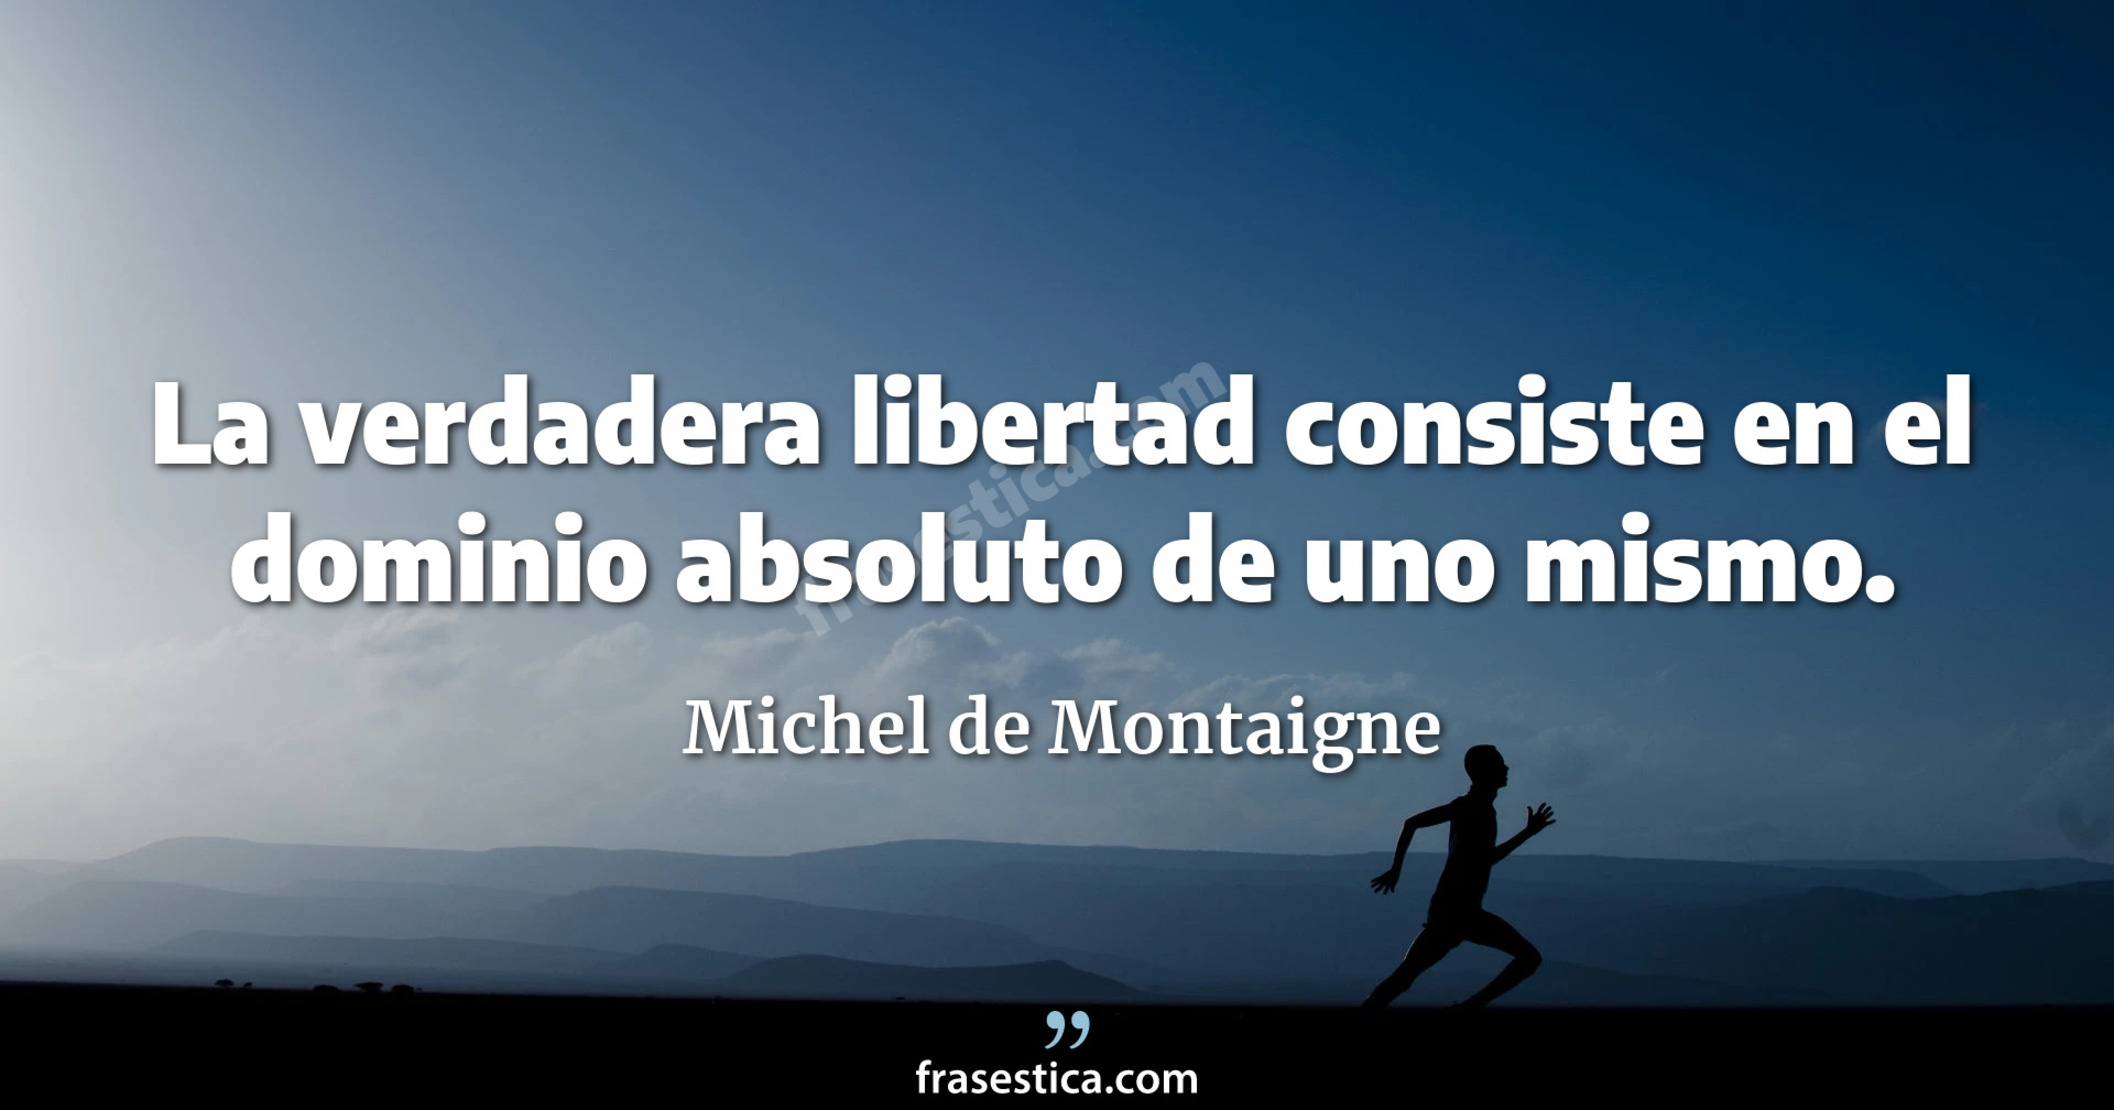 La verdadera libertad consiste en el dominio absoluto de uno mismo. - Michel de Montaigne